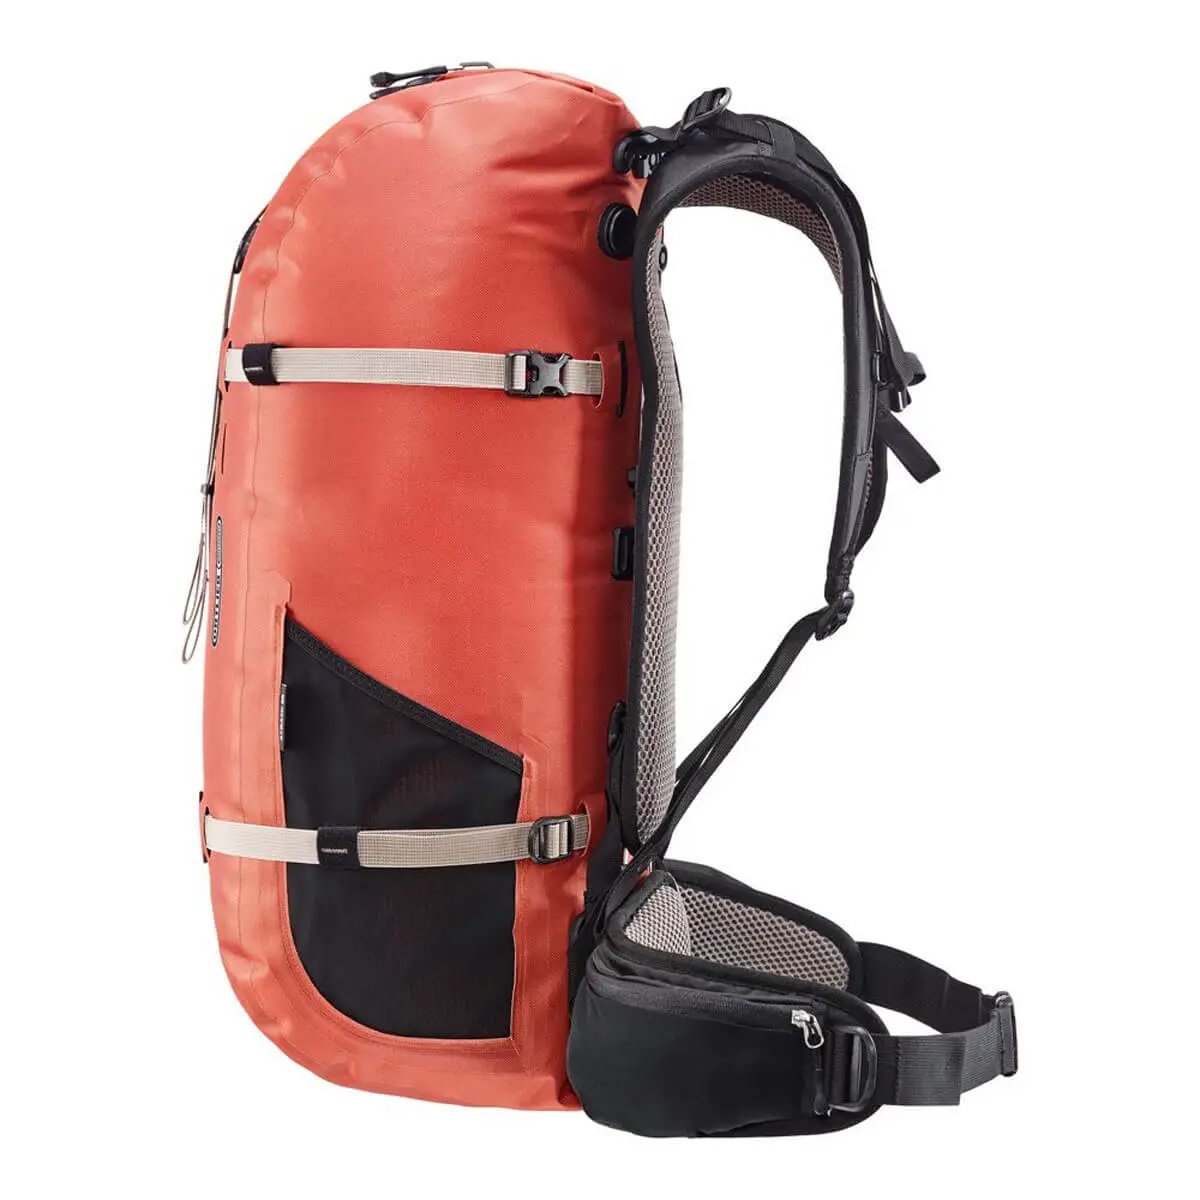 Ortlieb Atrack 35L Backpack - John Bull Clothing